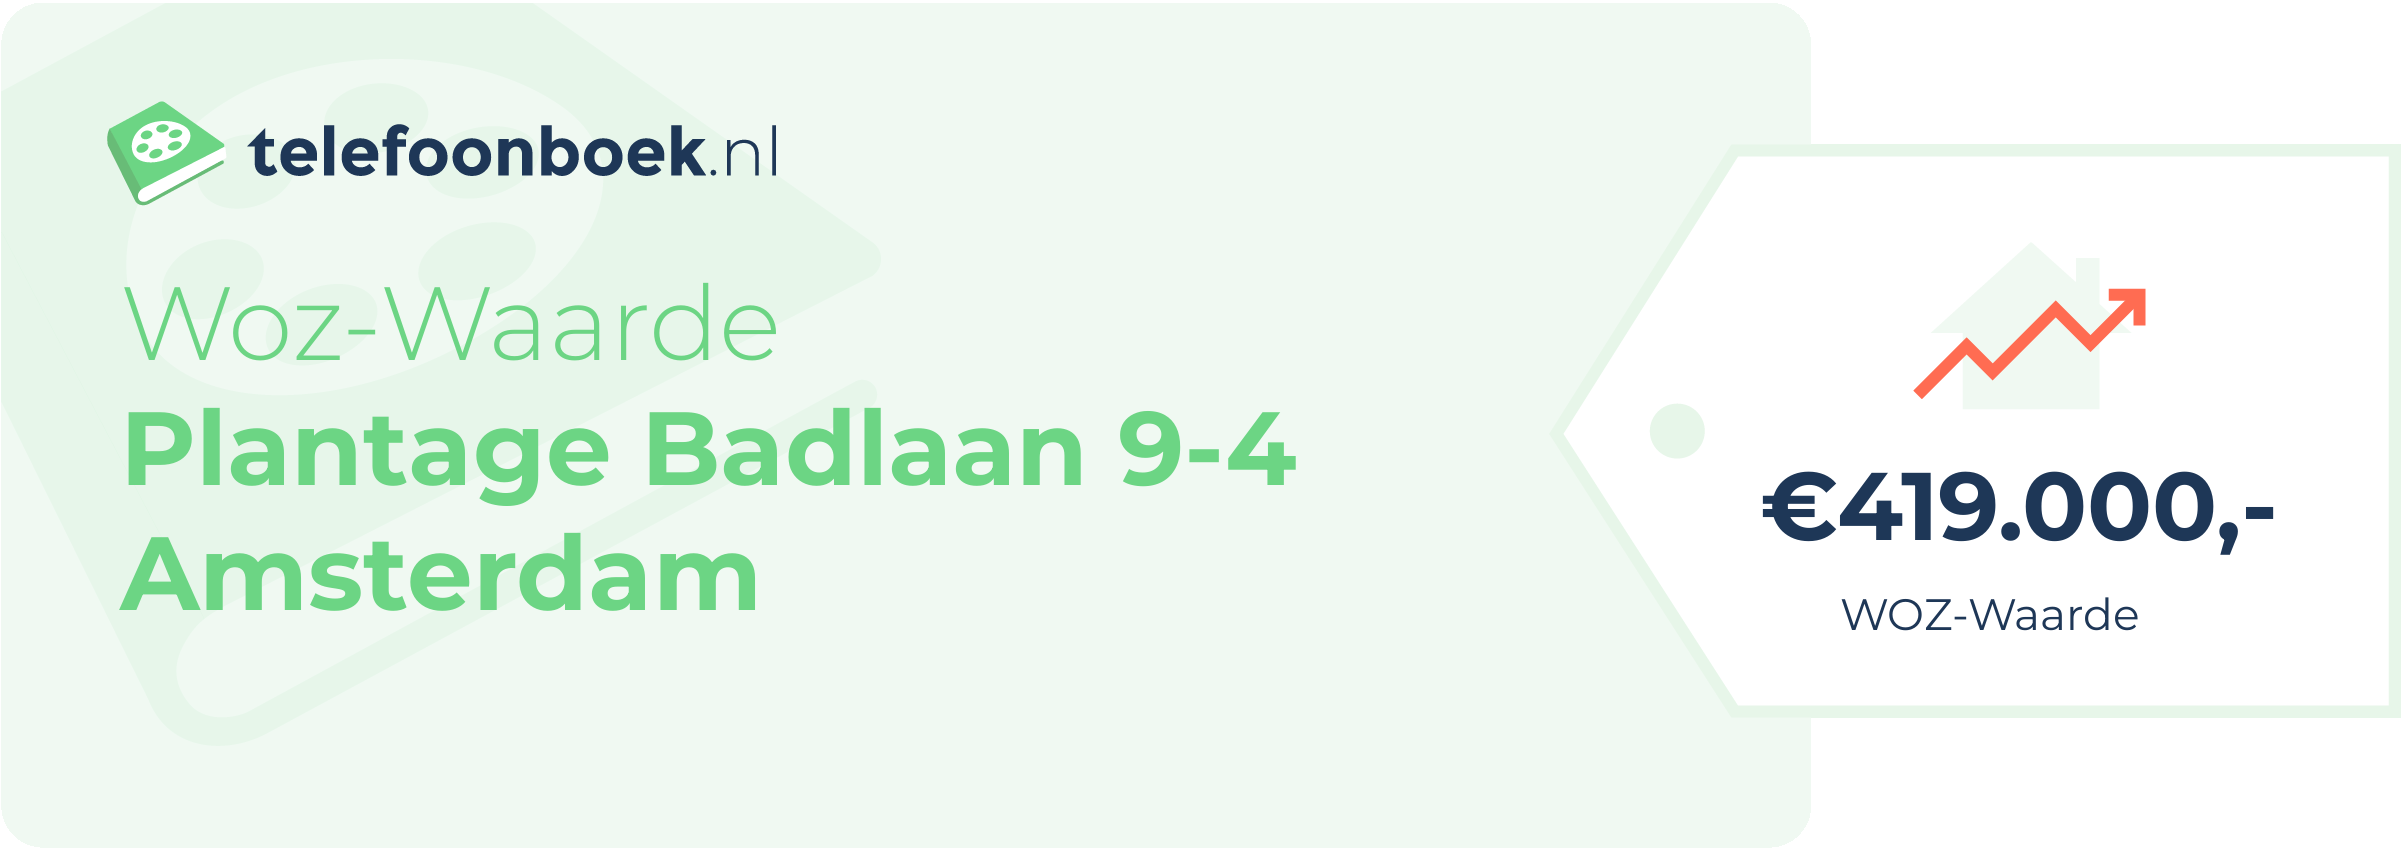 WOZ-waarde Plantage Badlaan 9-4 Amsterdam